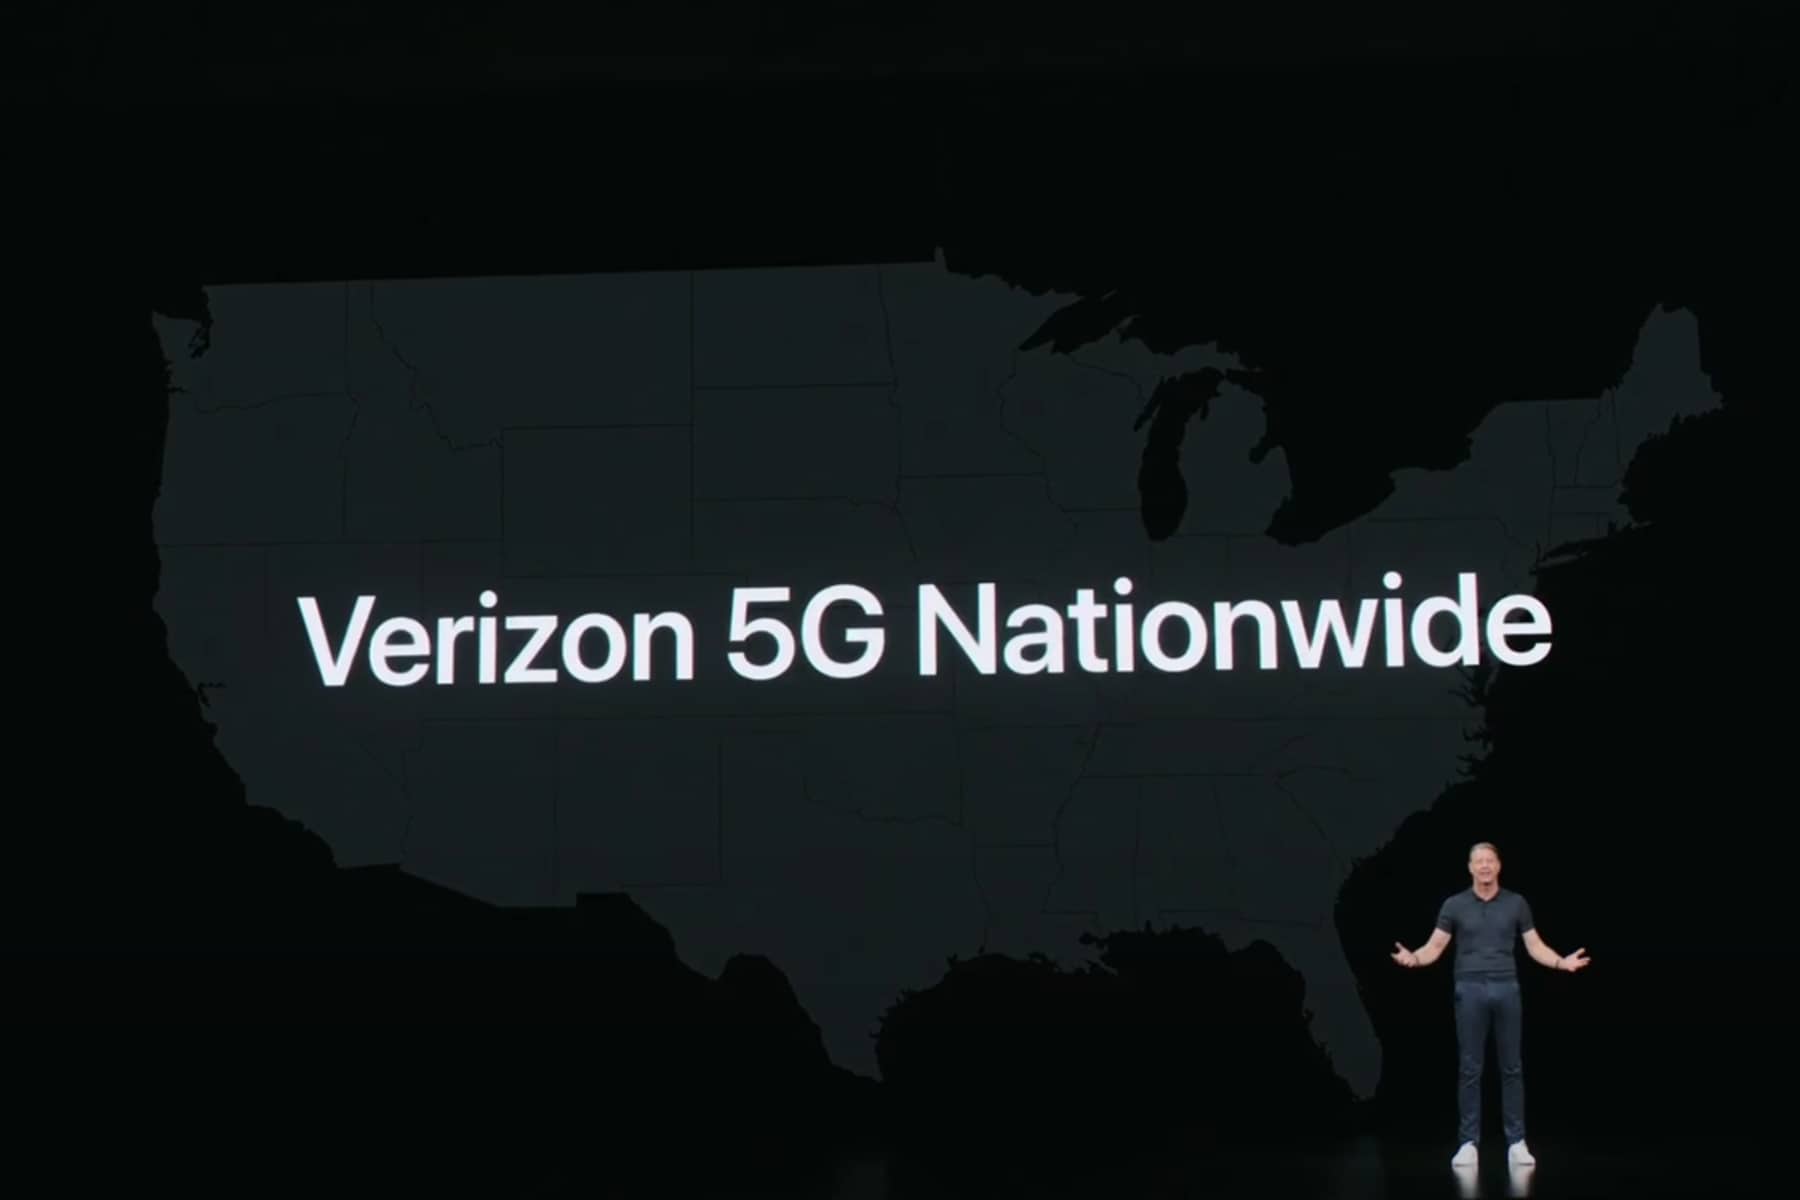 O CEO da Verizon, Hans Vestberg, no palco anunciando o serviço 5G nacional.